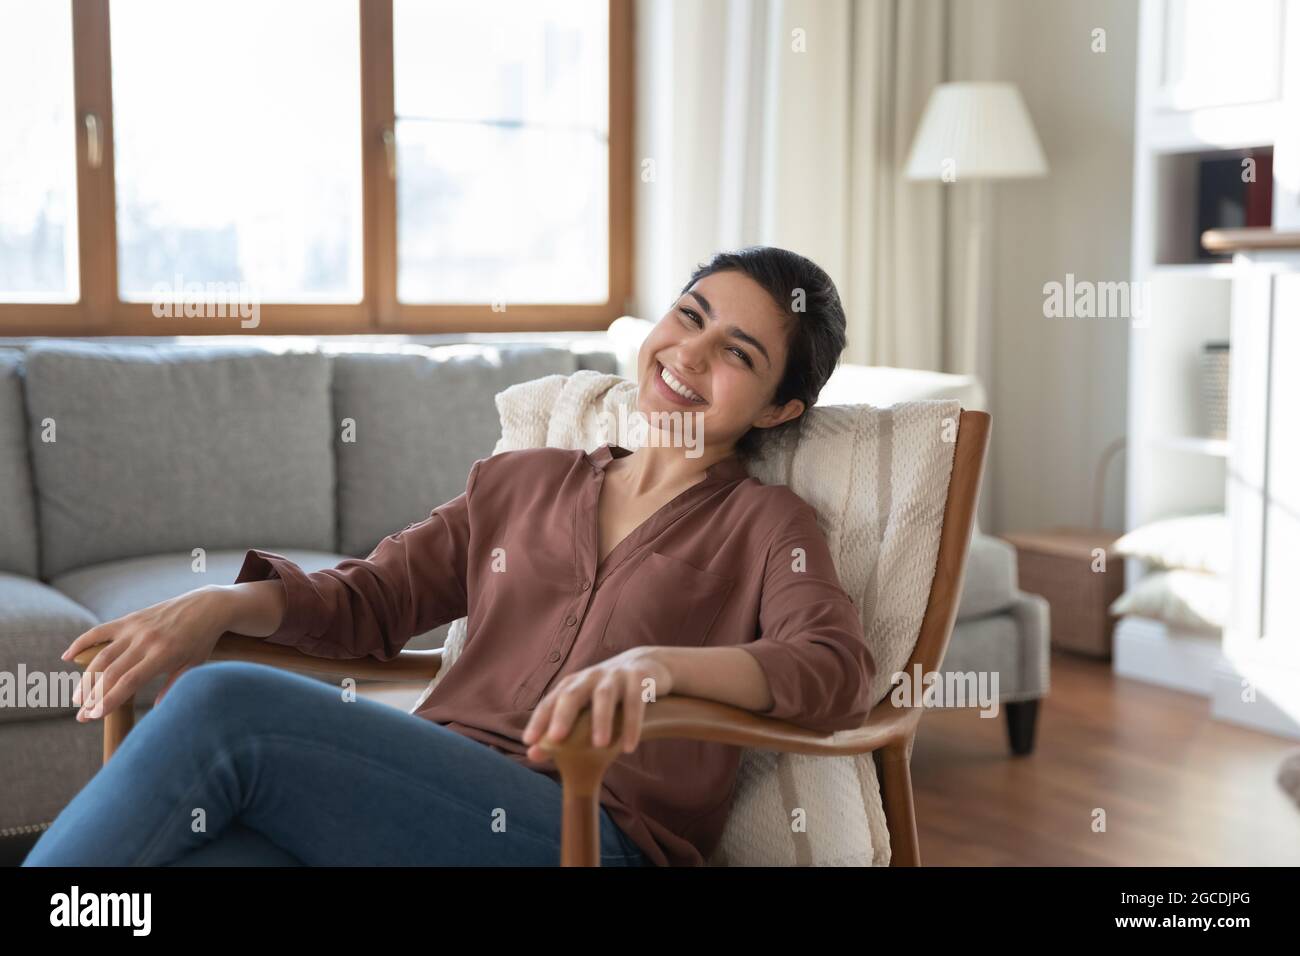 Ritratto di felice donna indiana rilassarsi in comoda poltrona Foto Stock